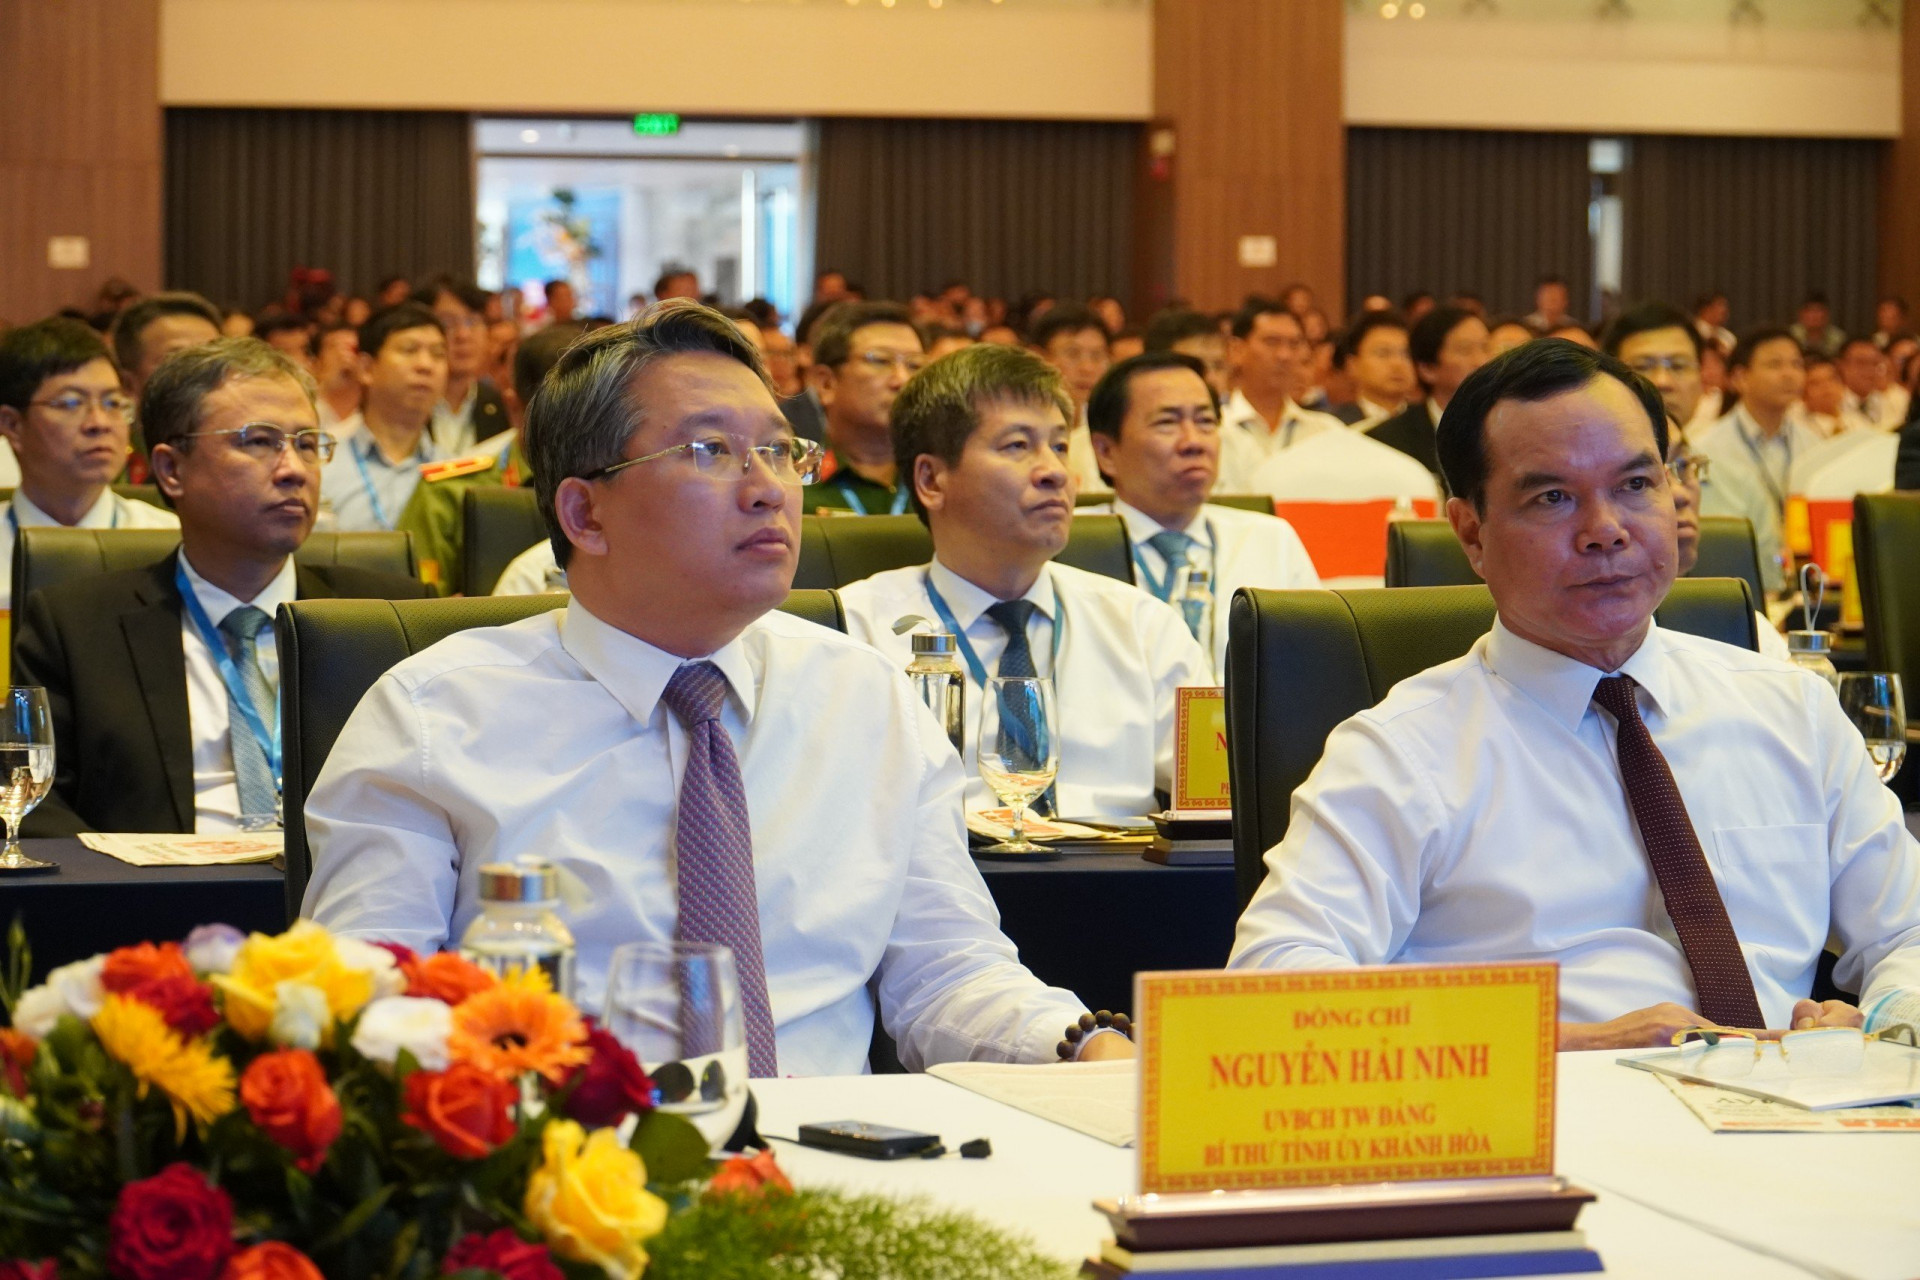 Đồng chí Nguyễn Hải Ninh dự hội nghị công bố Quy hoạch tỉnh Ninh Thuận